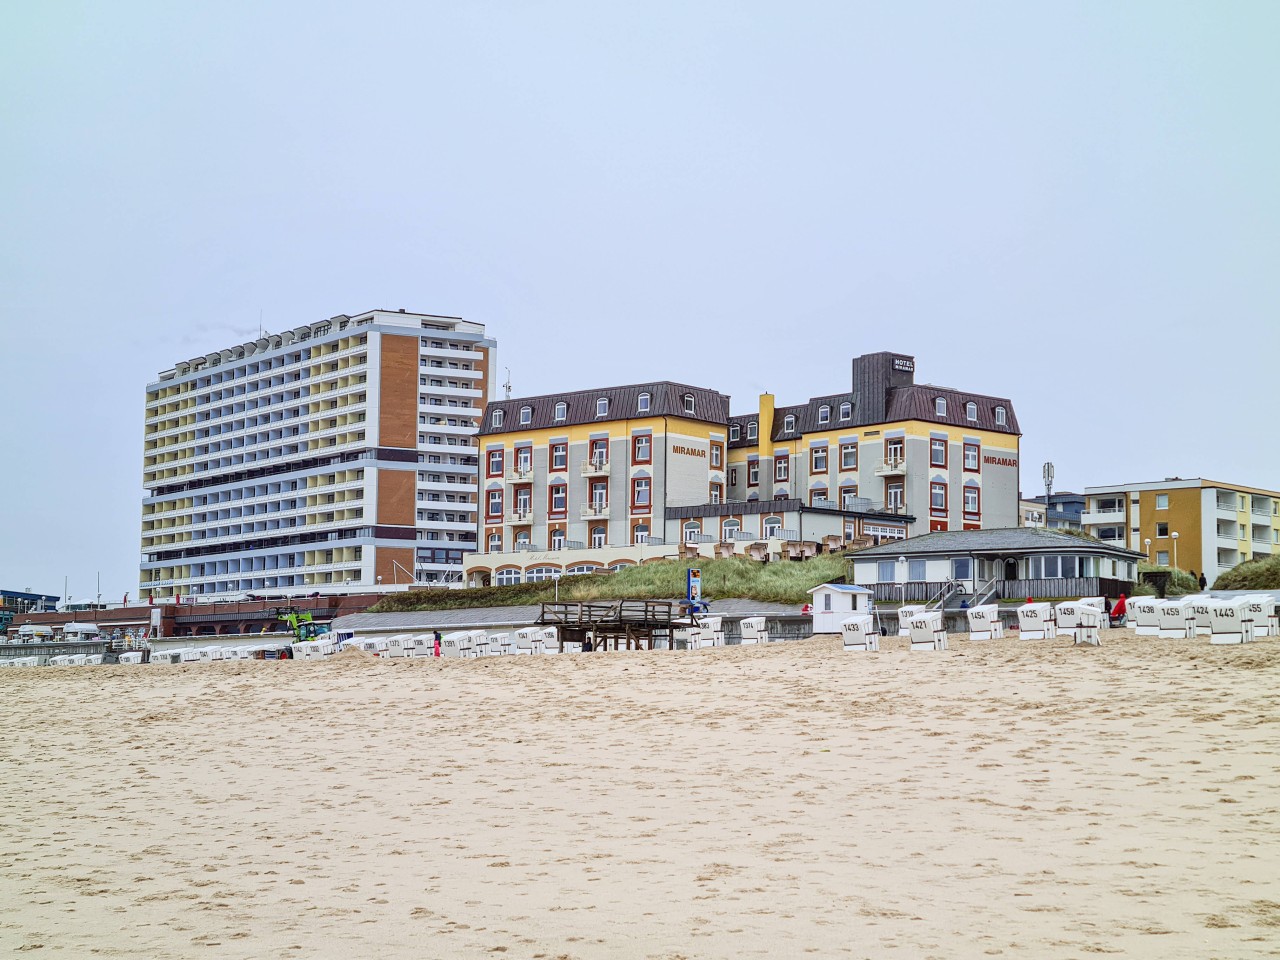 Urlaub an der Nordsee: Viele Hotels und Pensionen sind ausgebucht.